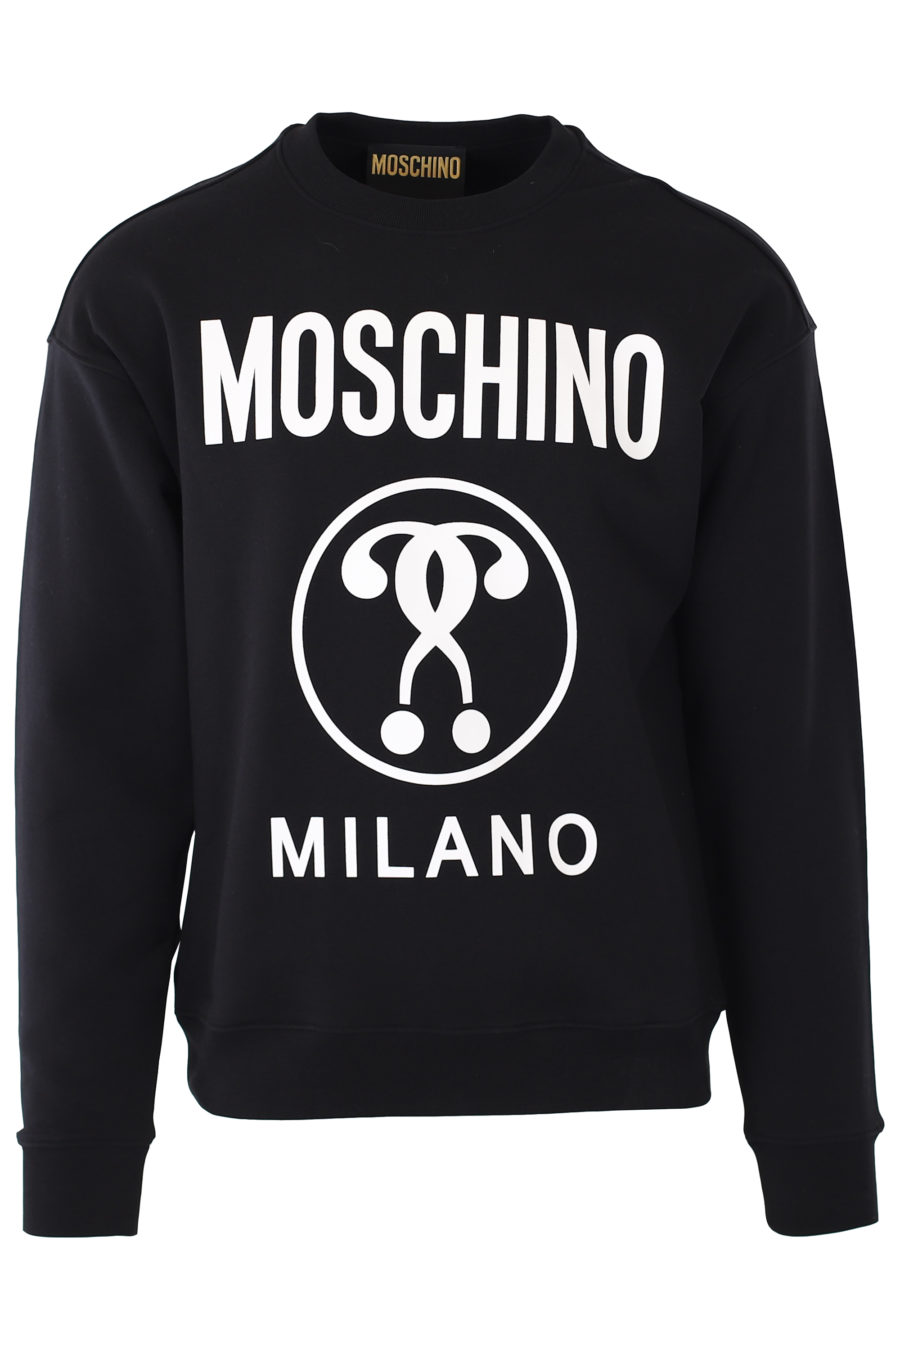 Schwarzes Sweatshirt mit weißem Milano-Doppelfragen-Logo - IMG 9349